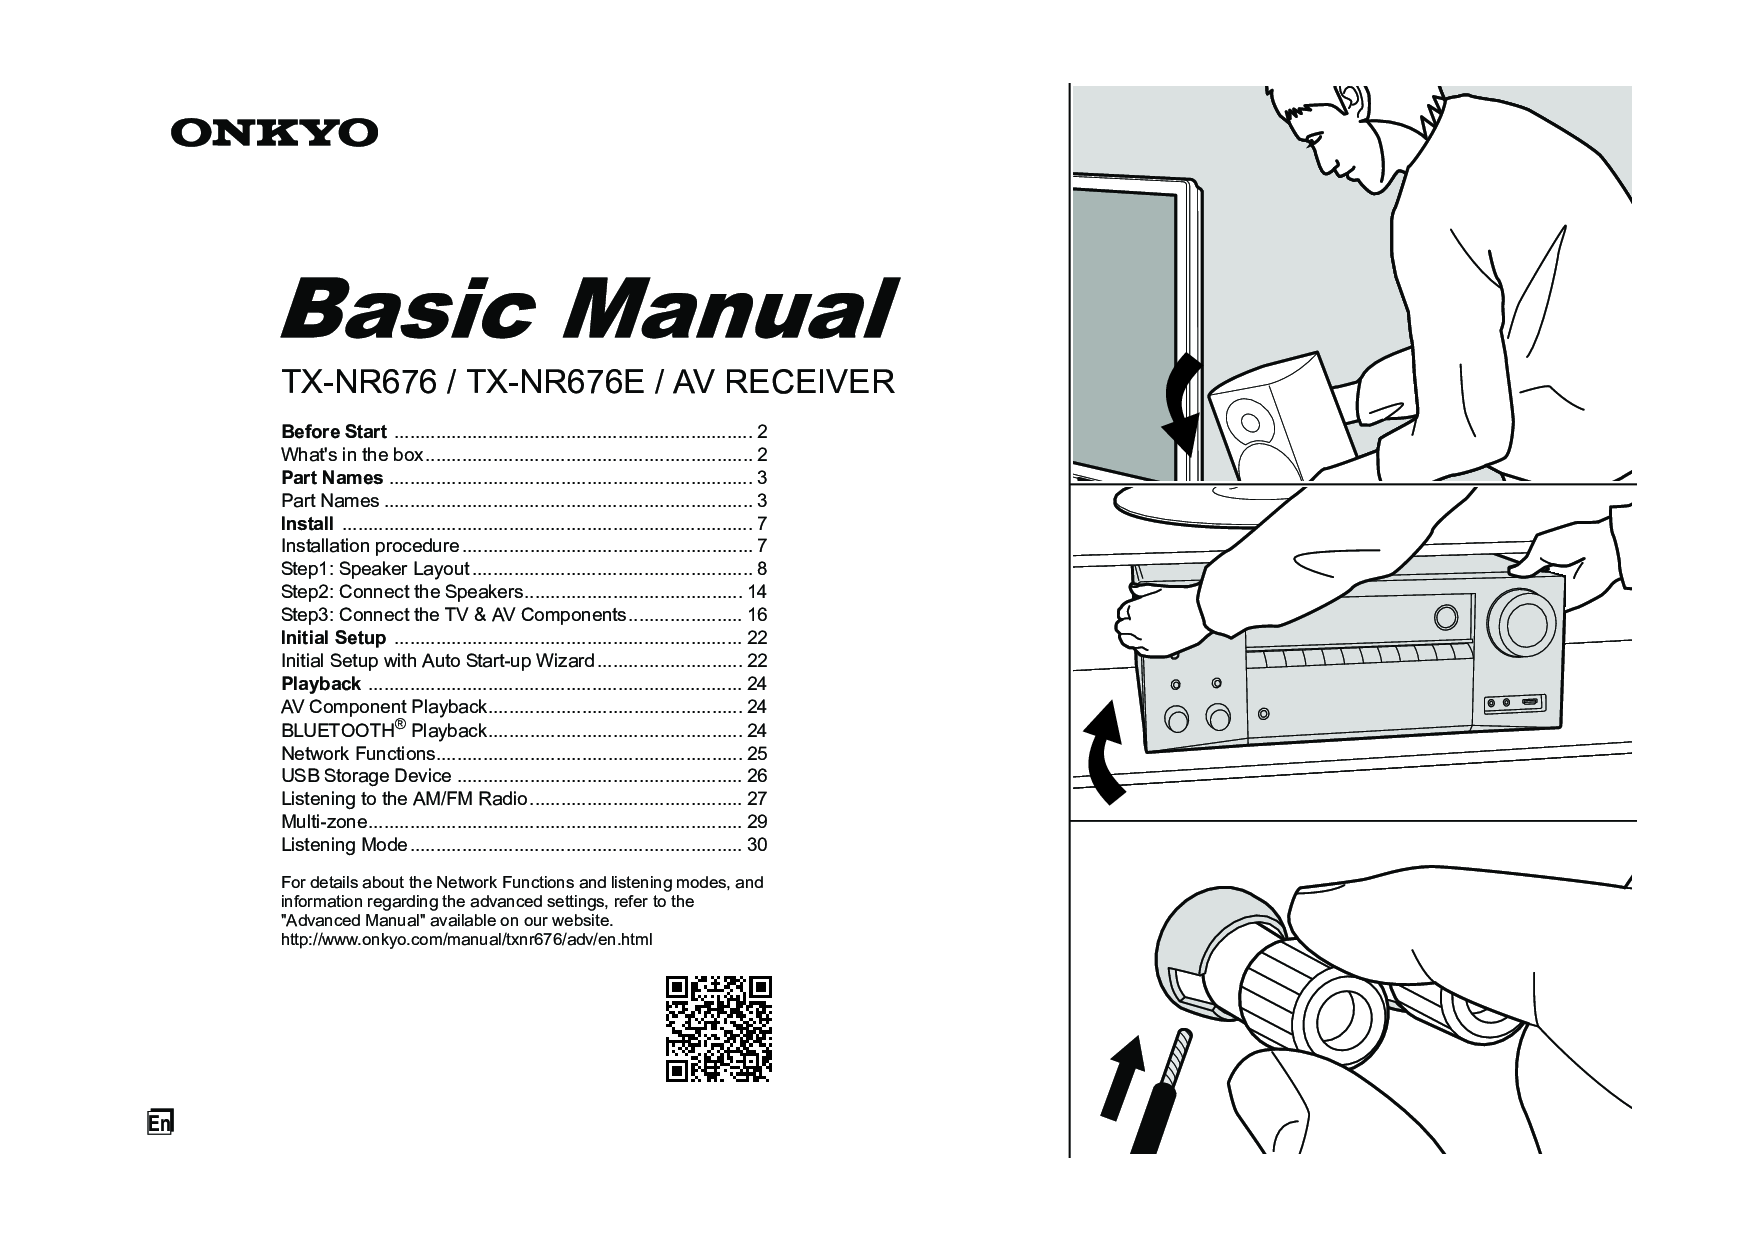 Onkyo TX-NR676, TX-NR676E Basic Manual